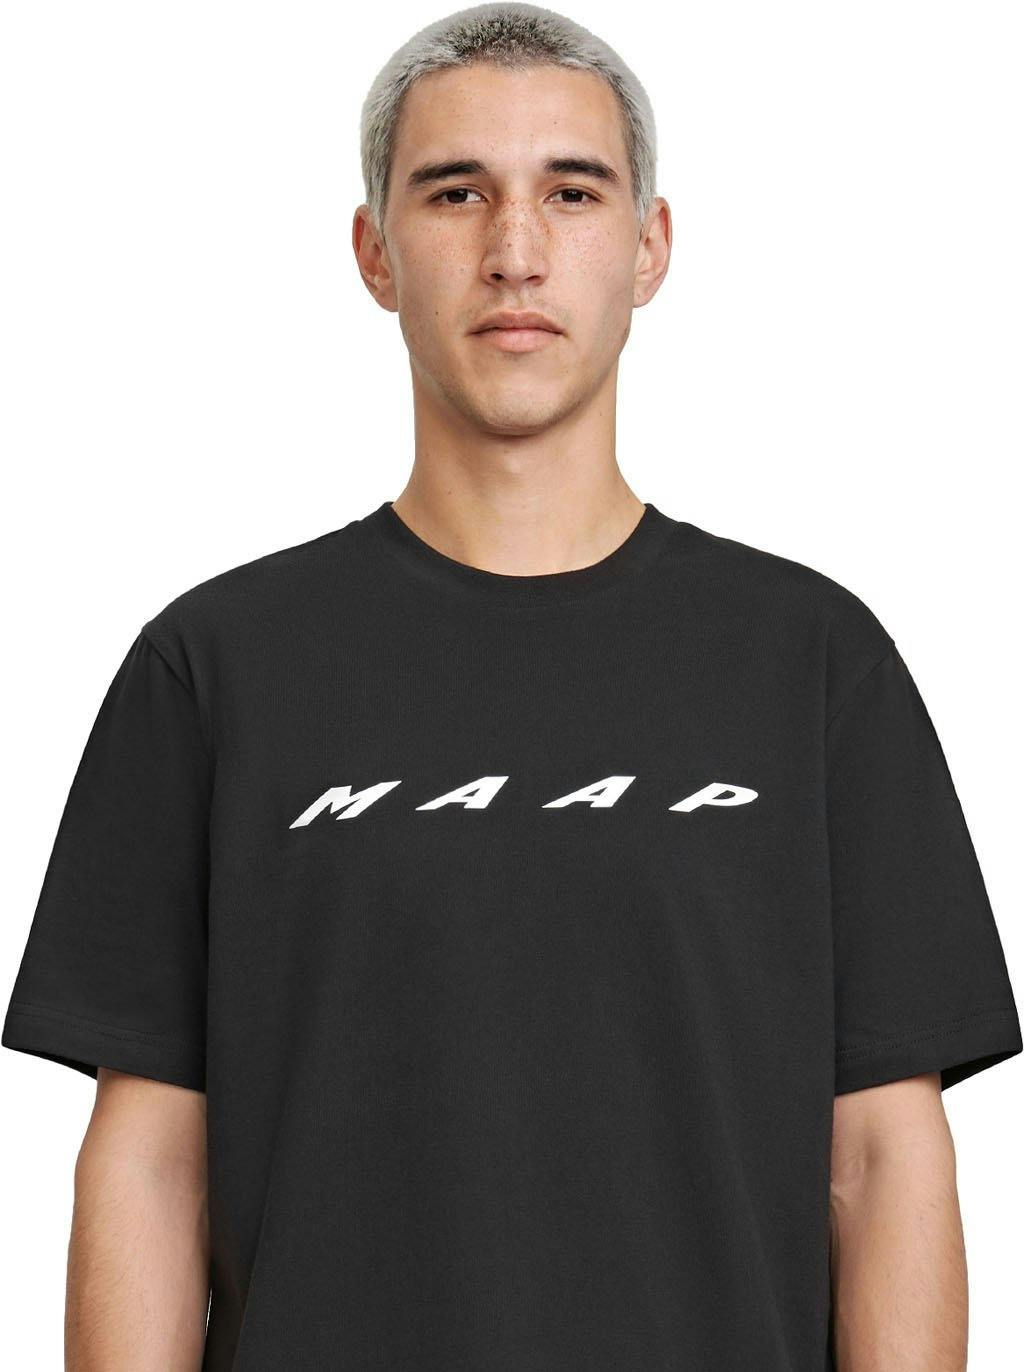 Numéro de l'image de la galerie de produits 3 pour le produit T-shirt Evade - Homme